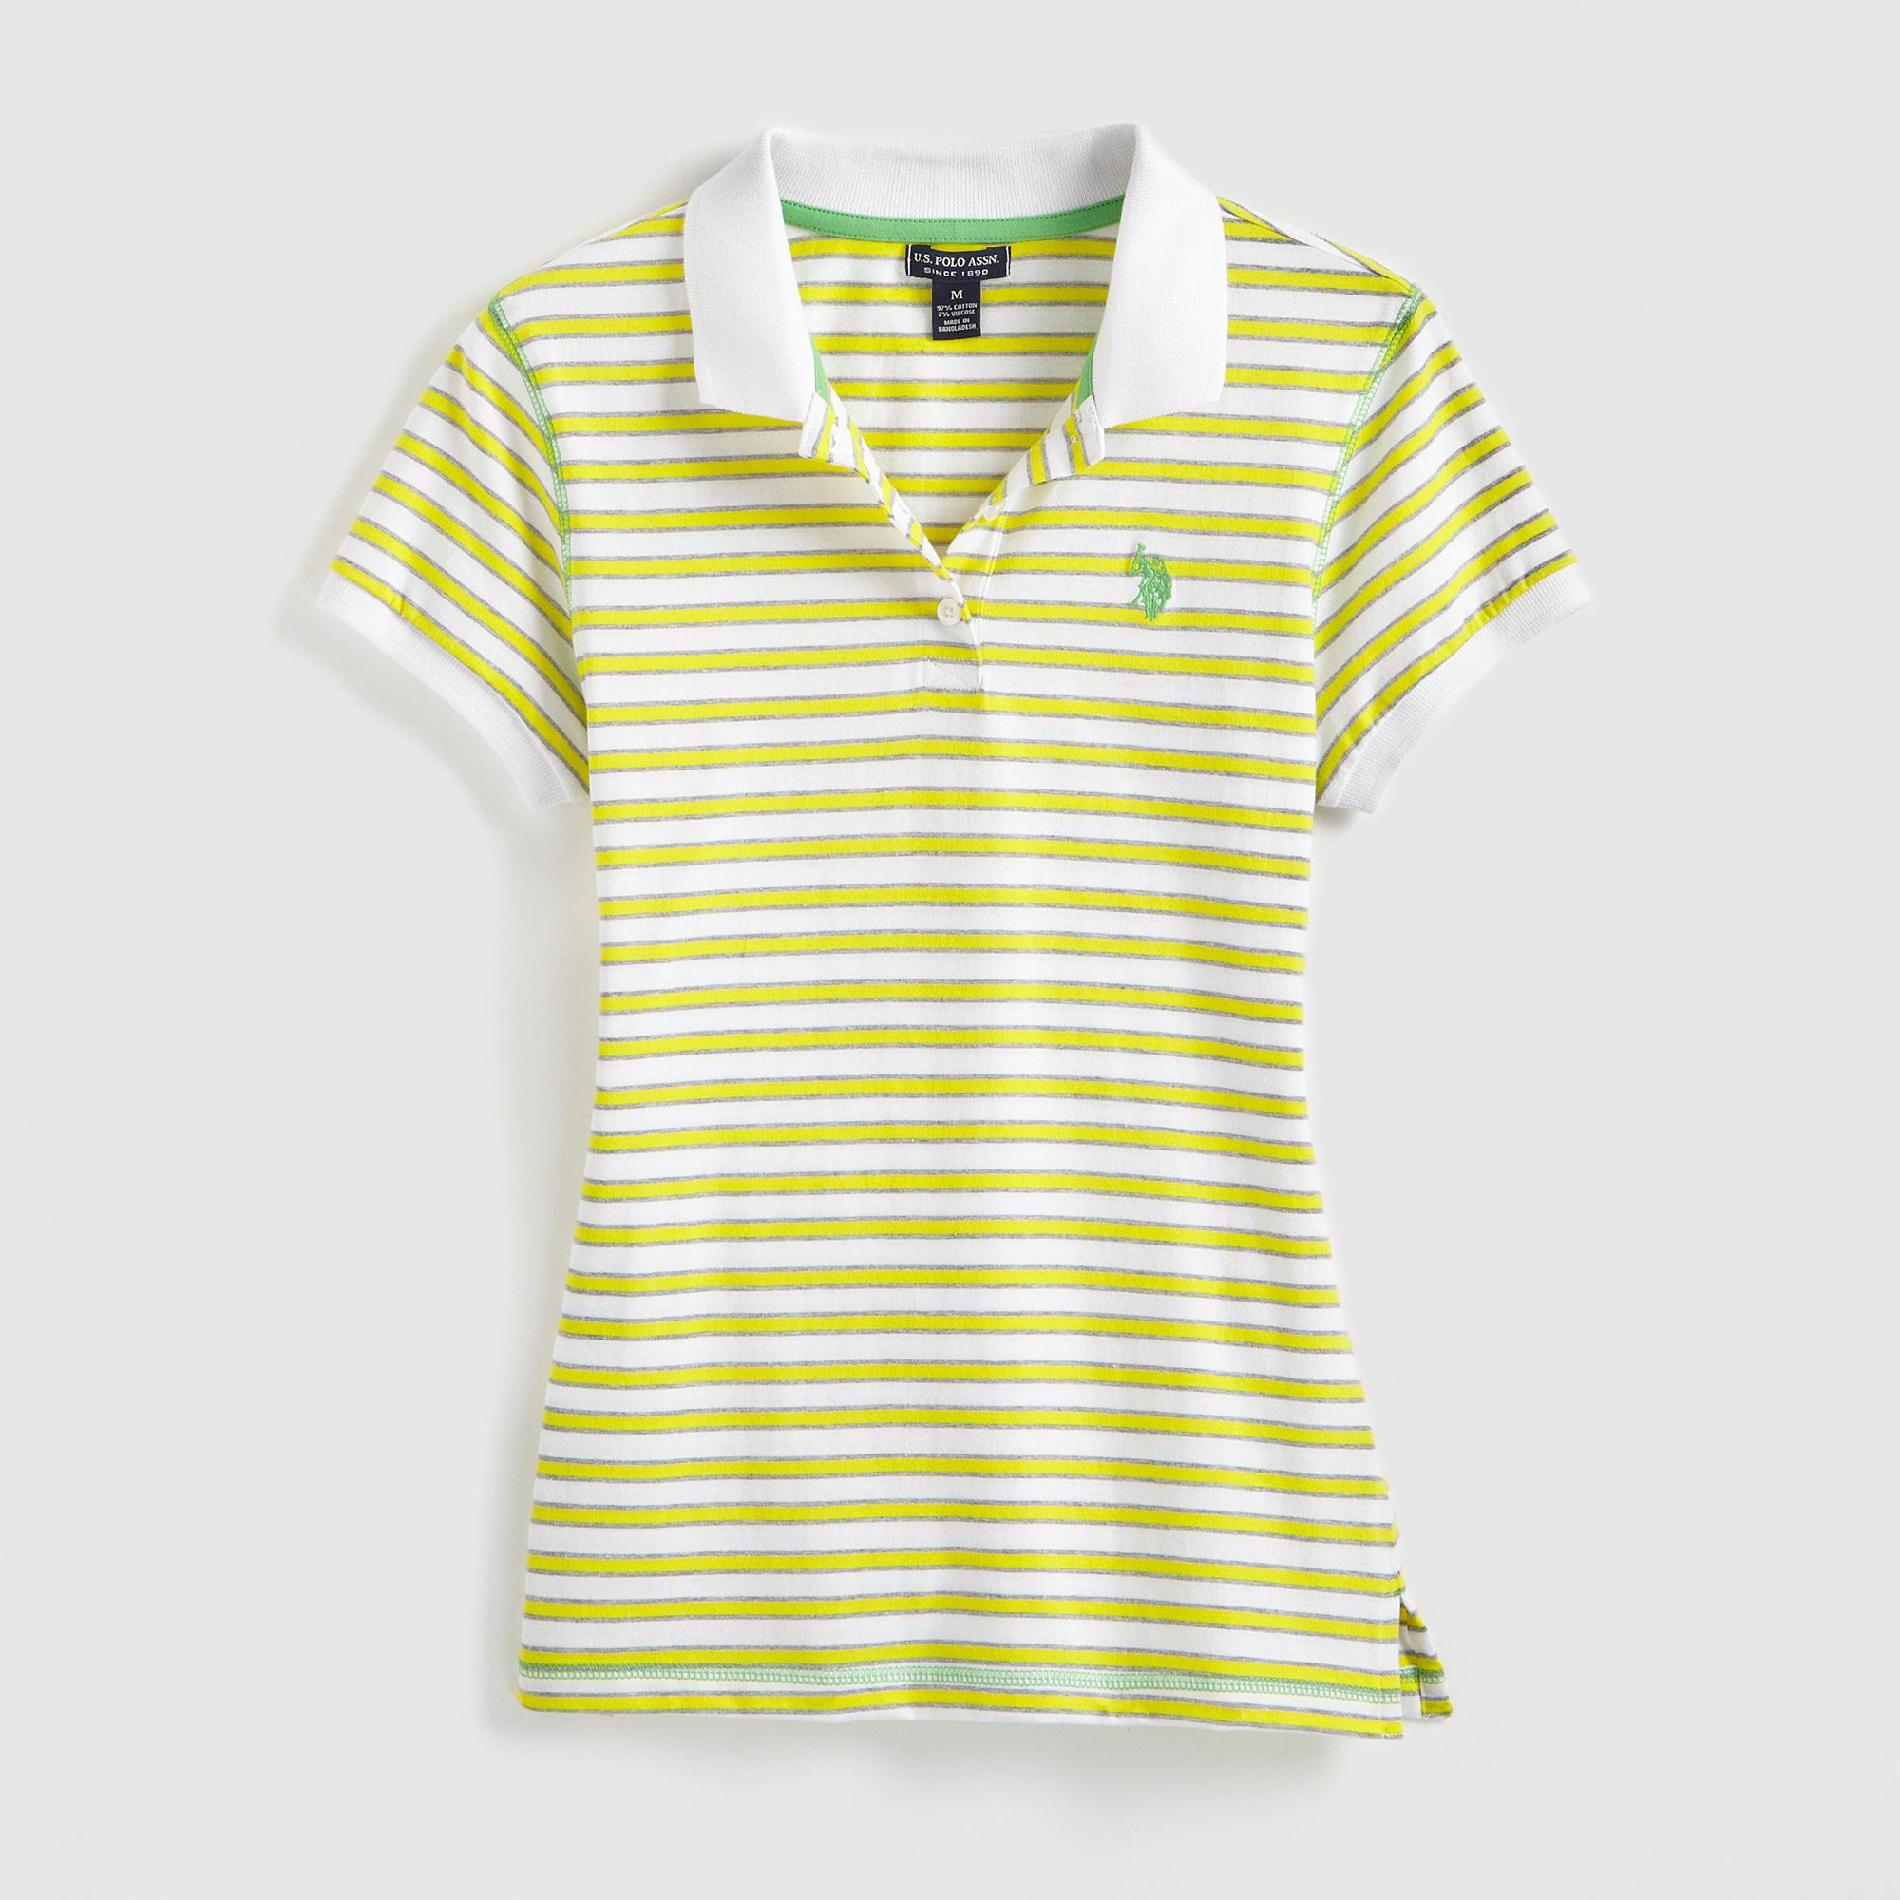 U.S. Polo Assn. Junior's Polo Shirt - Striped